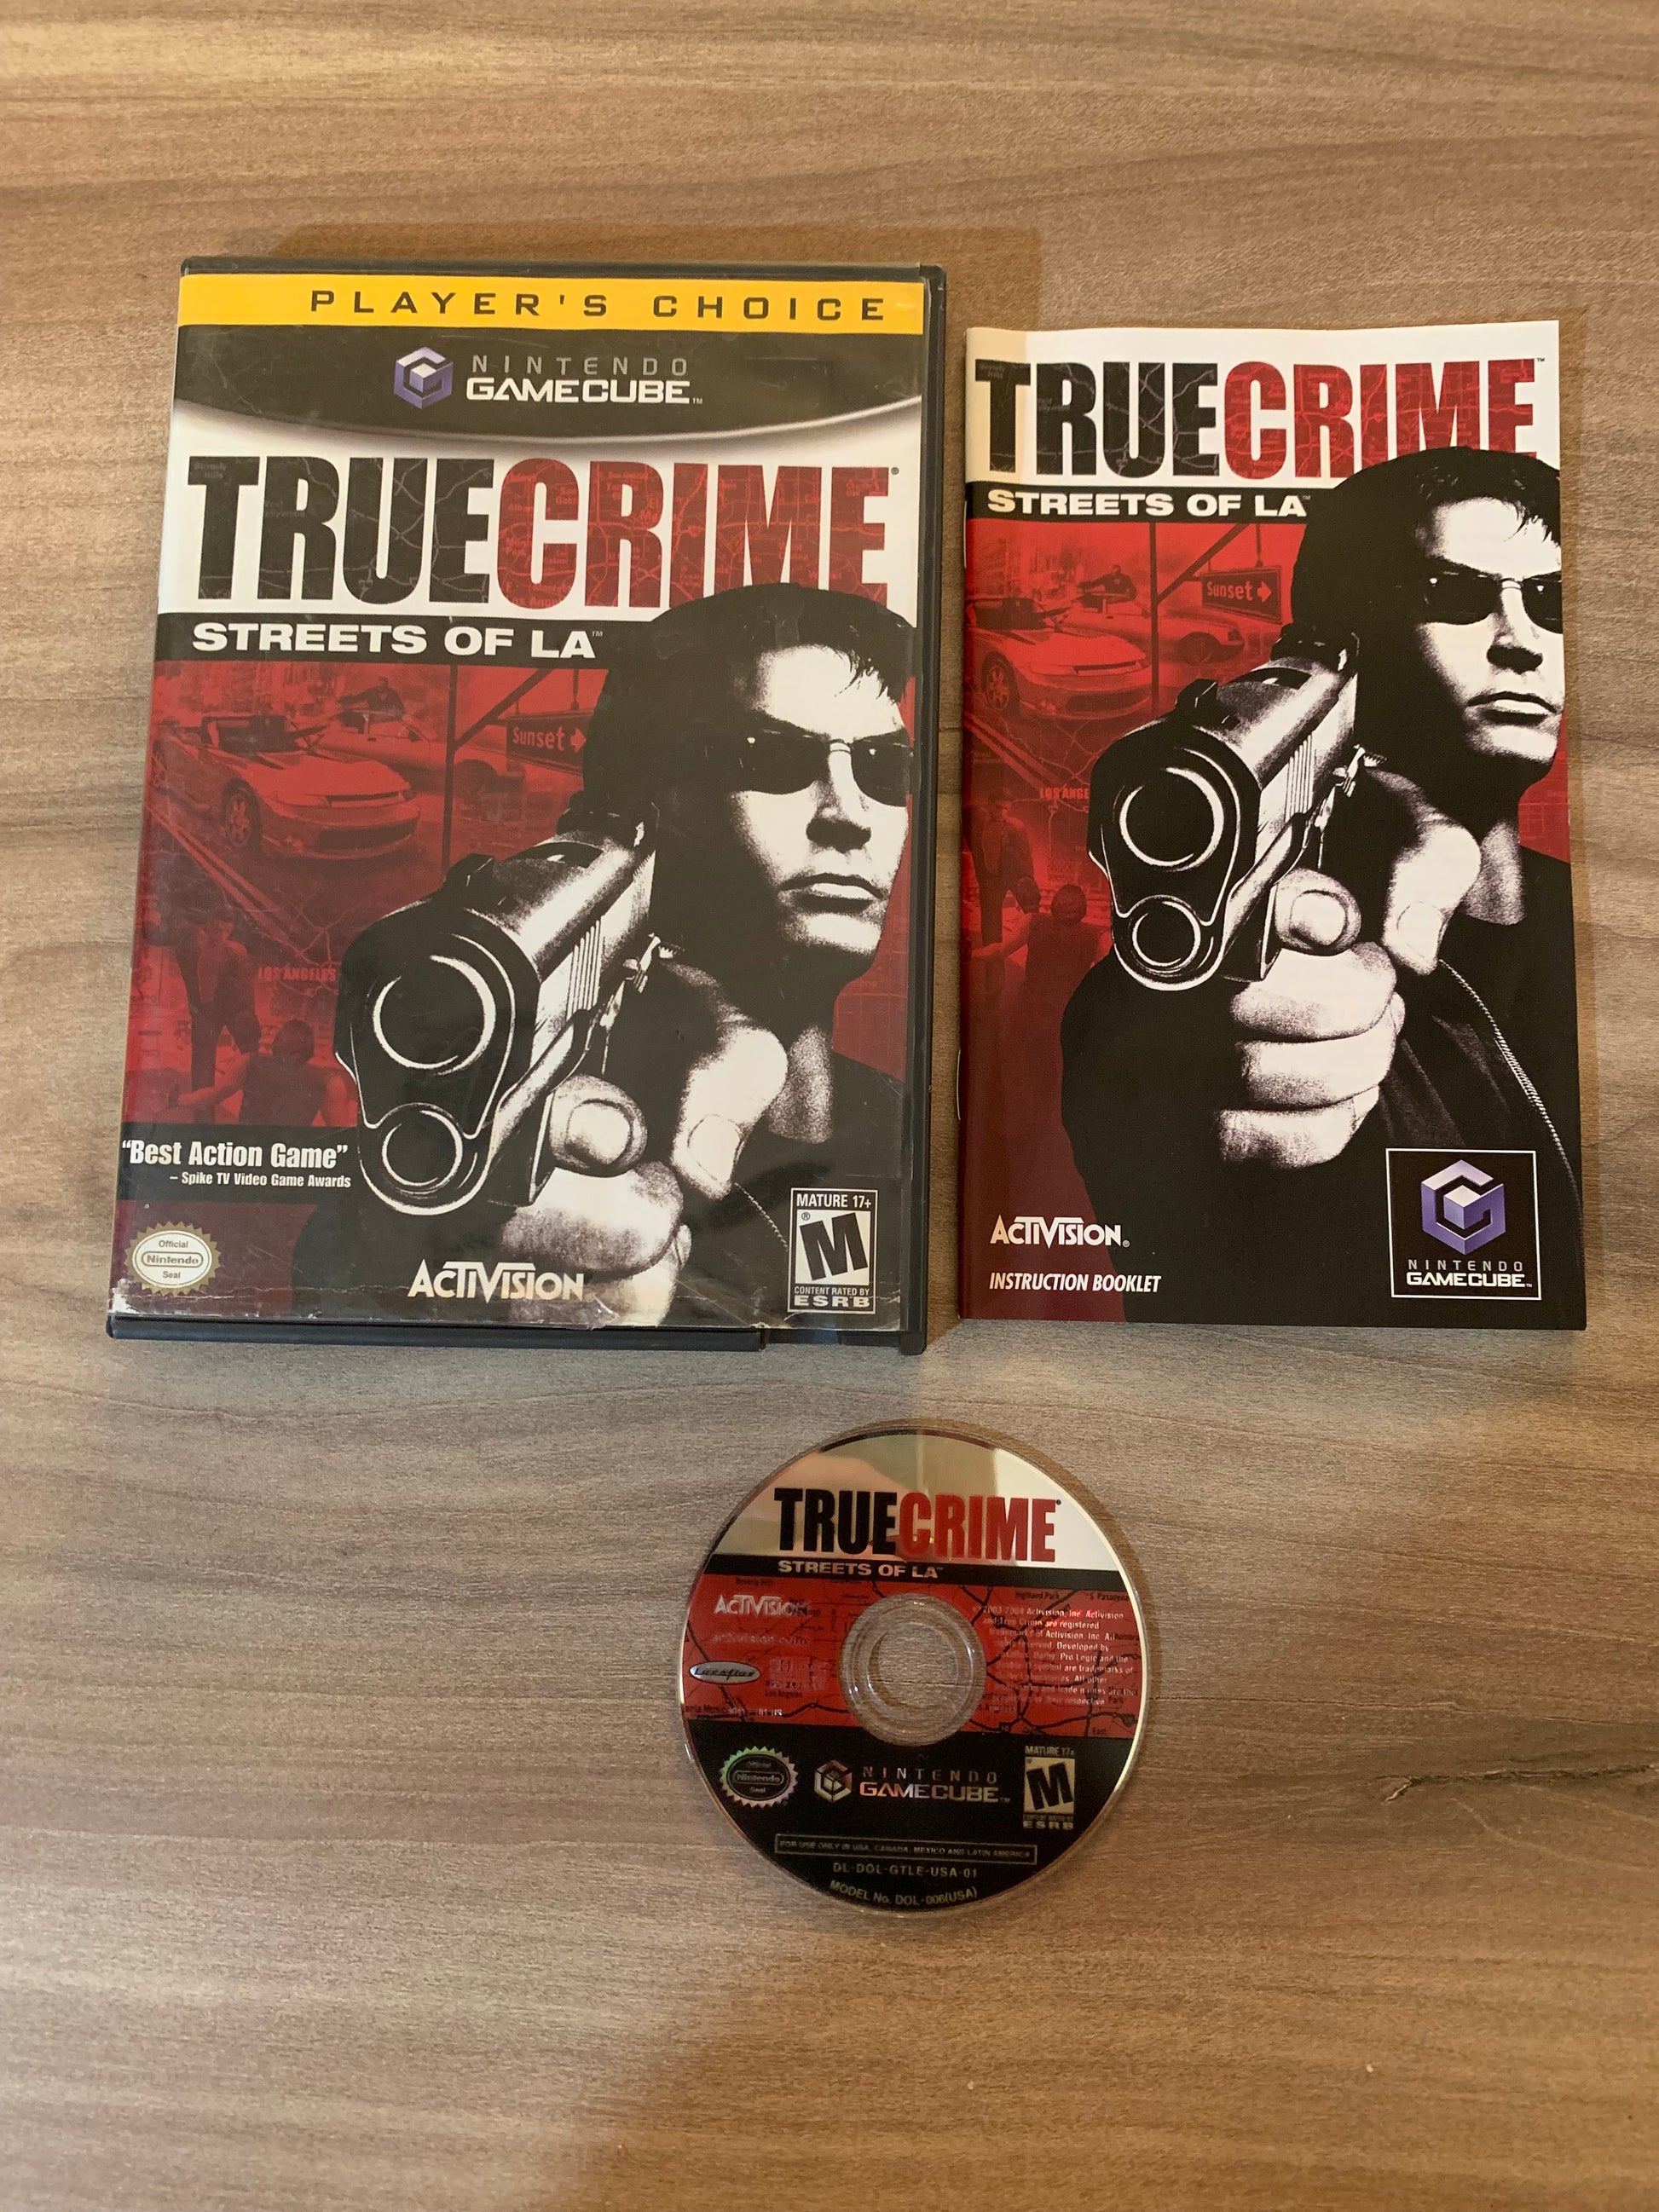 PiXEL-RETRO.COM : NINTENDO GAMECUBE COMPLETE CIB BOX MANUAL GAME NTSC TRUE CRIME STREETS OF LA